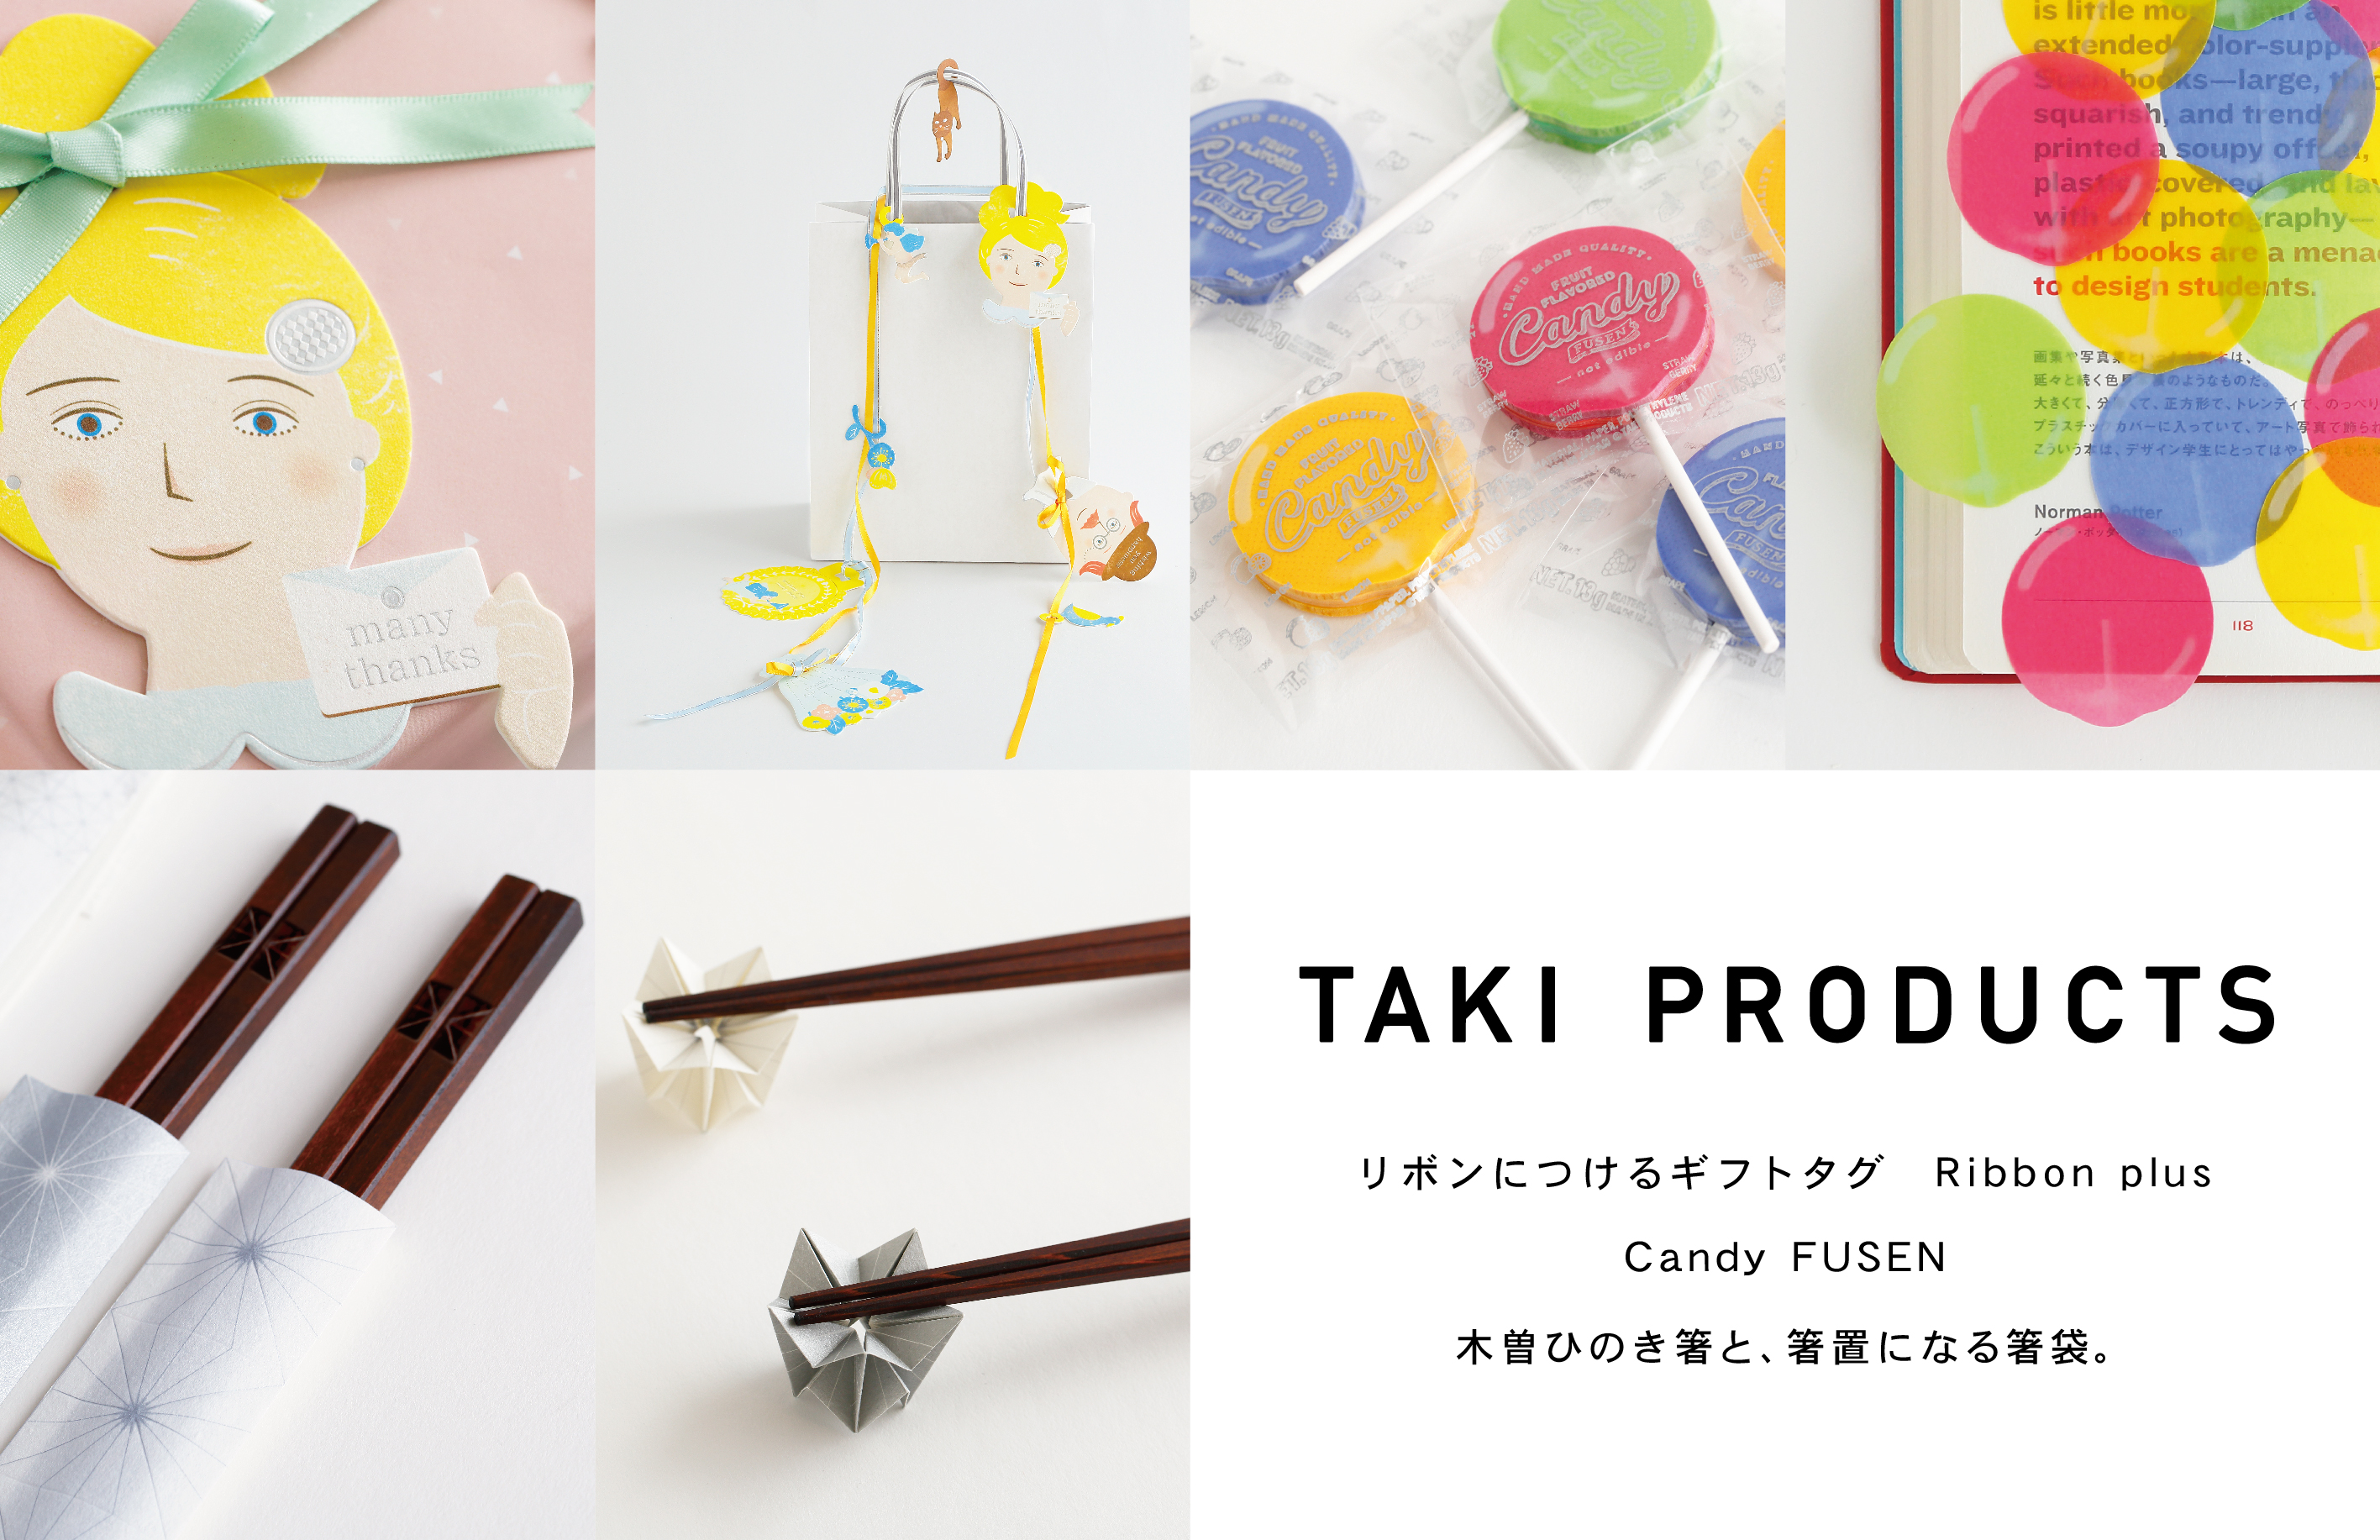 箸置きになる箸袋!? 「TAKI PRODUCTS」のユニークな紙製品 | at